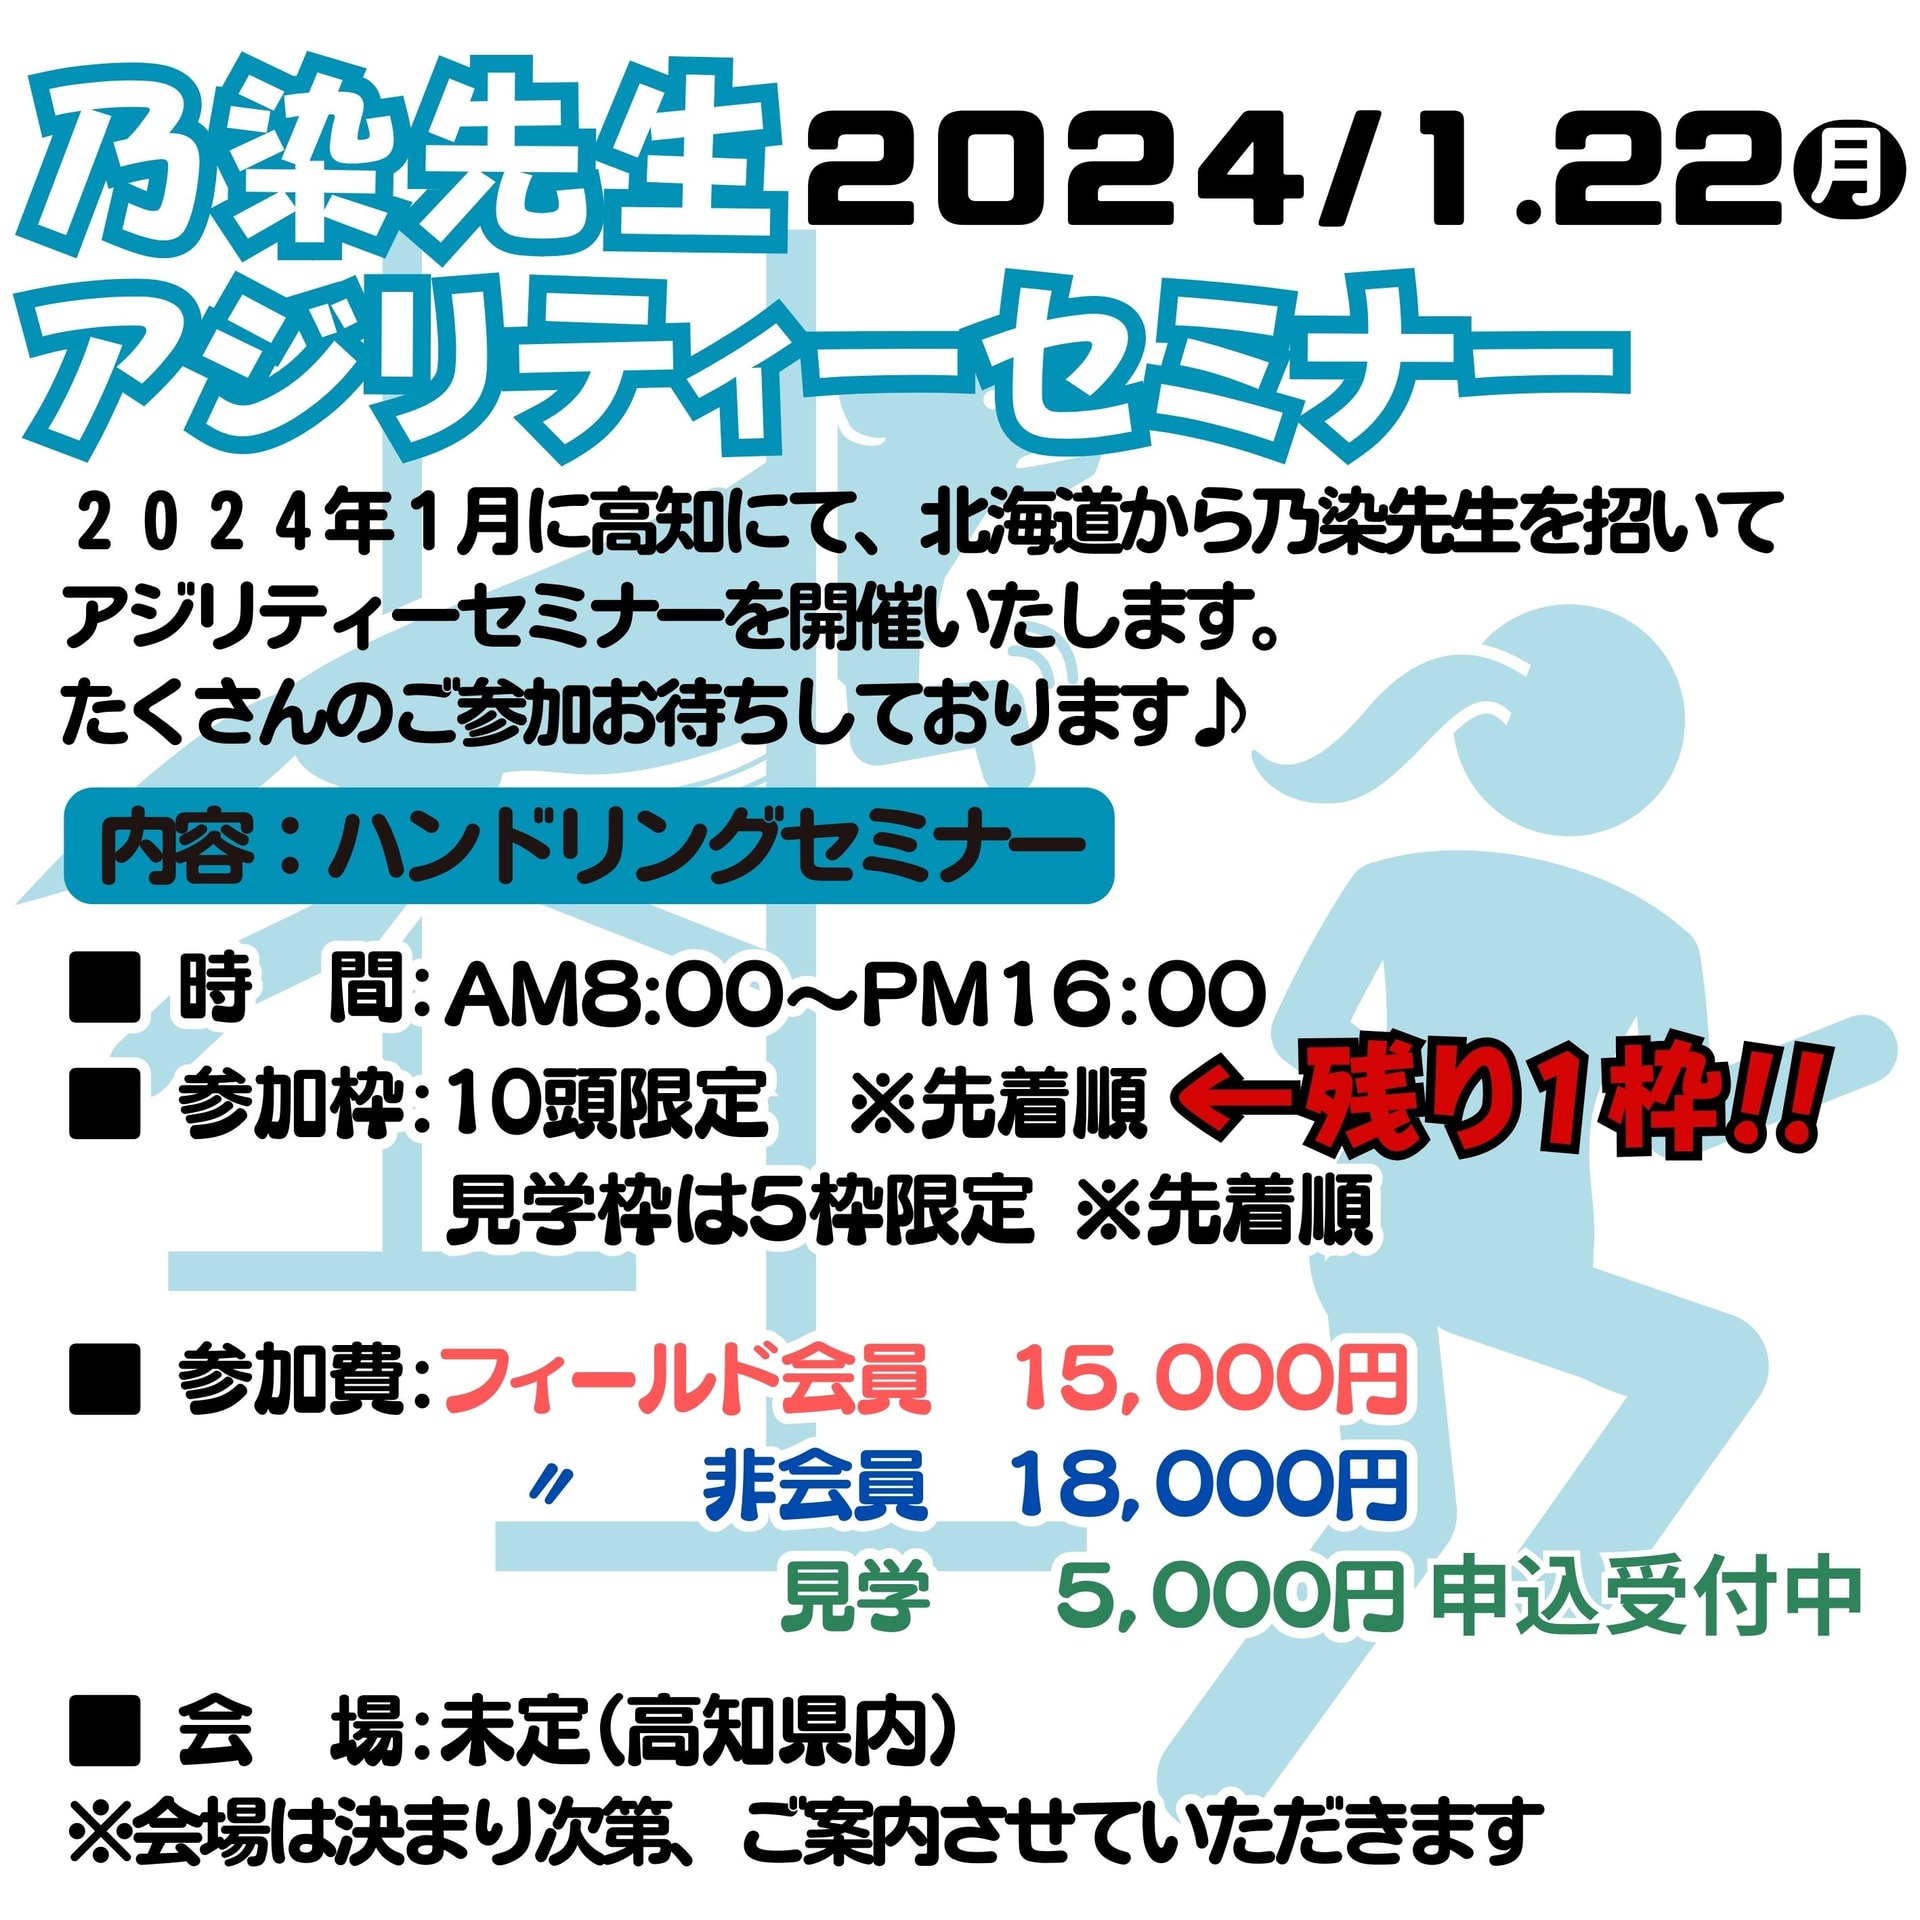 2024年1月22日(月)乃染先生アジリティーセミナー開催!!